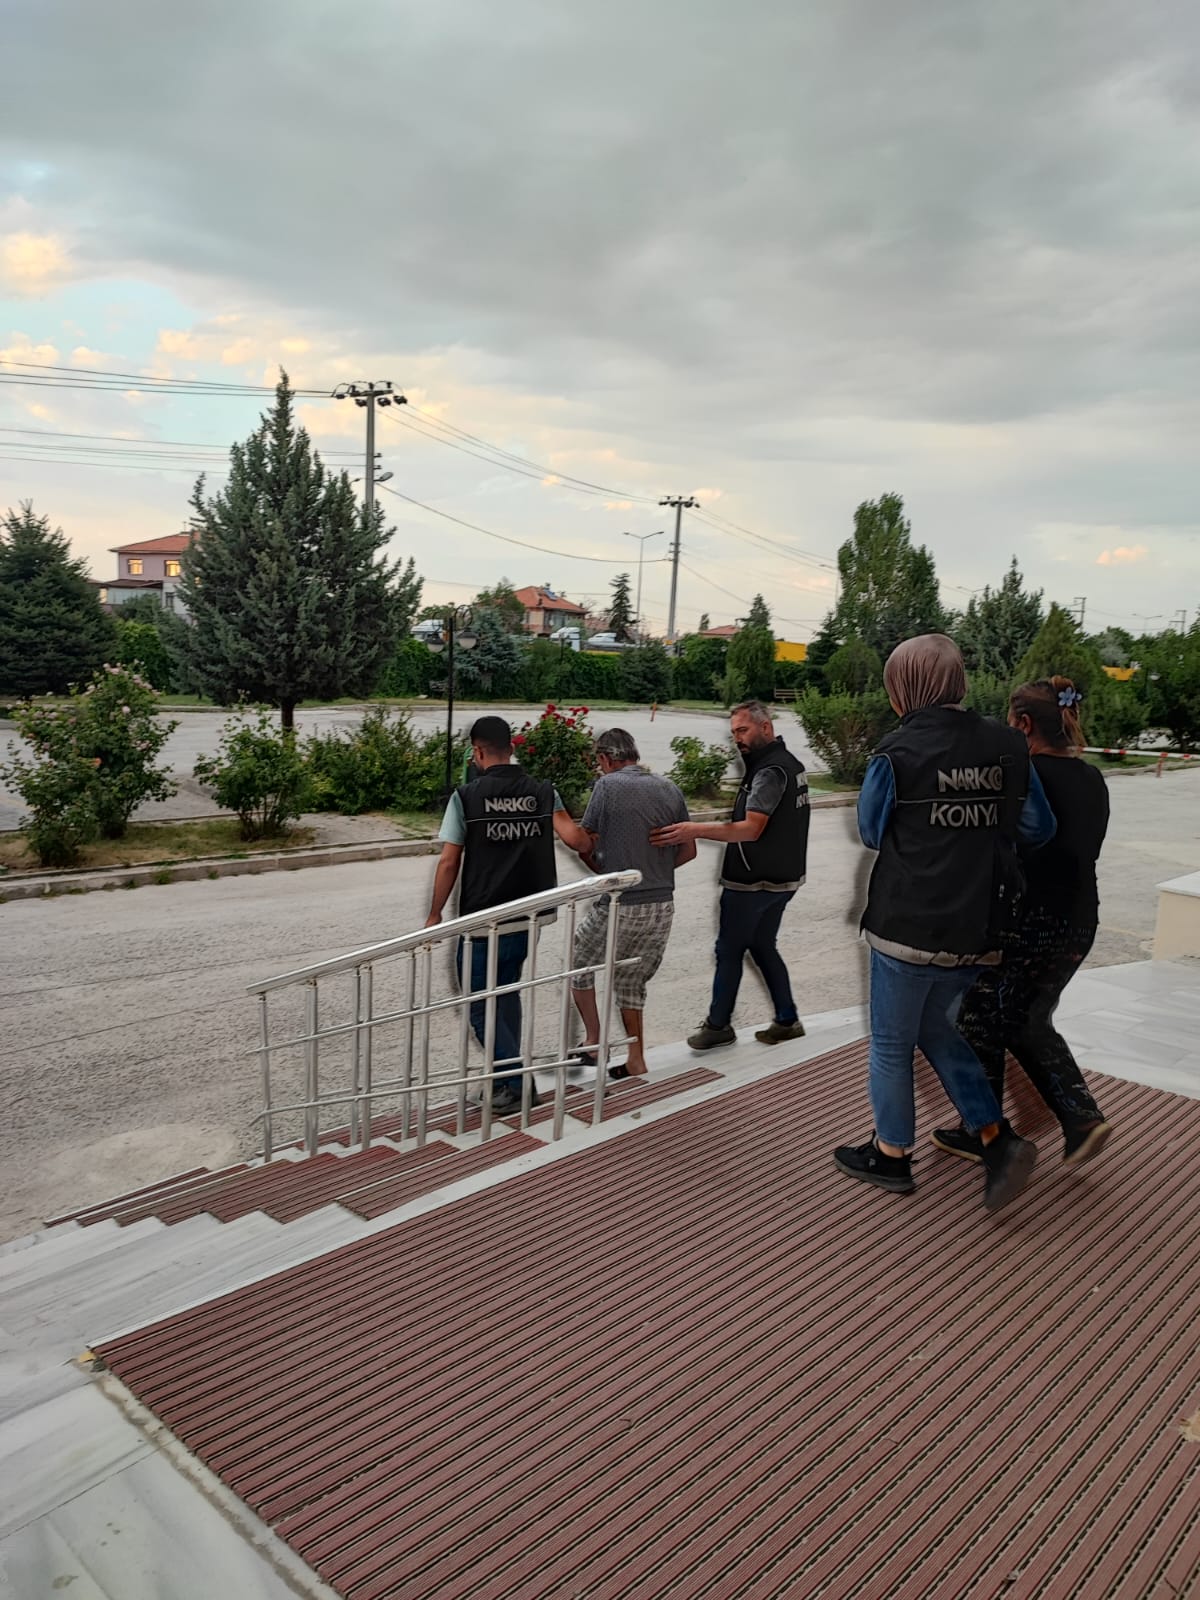 Zehir taciri karı-koca Konya Polisi'nin dikkatinden kaçmadı!